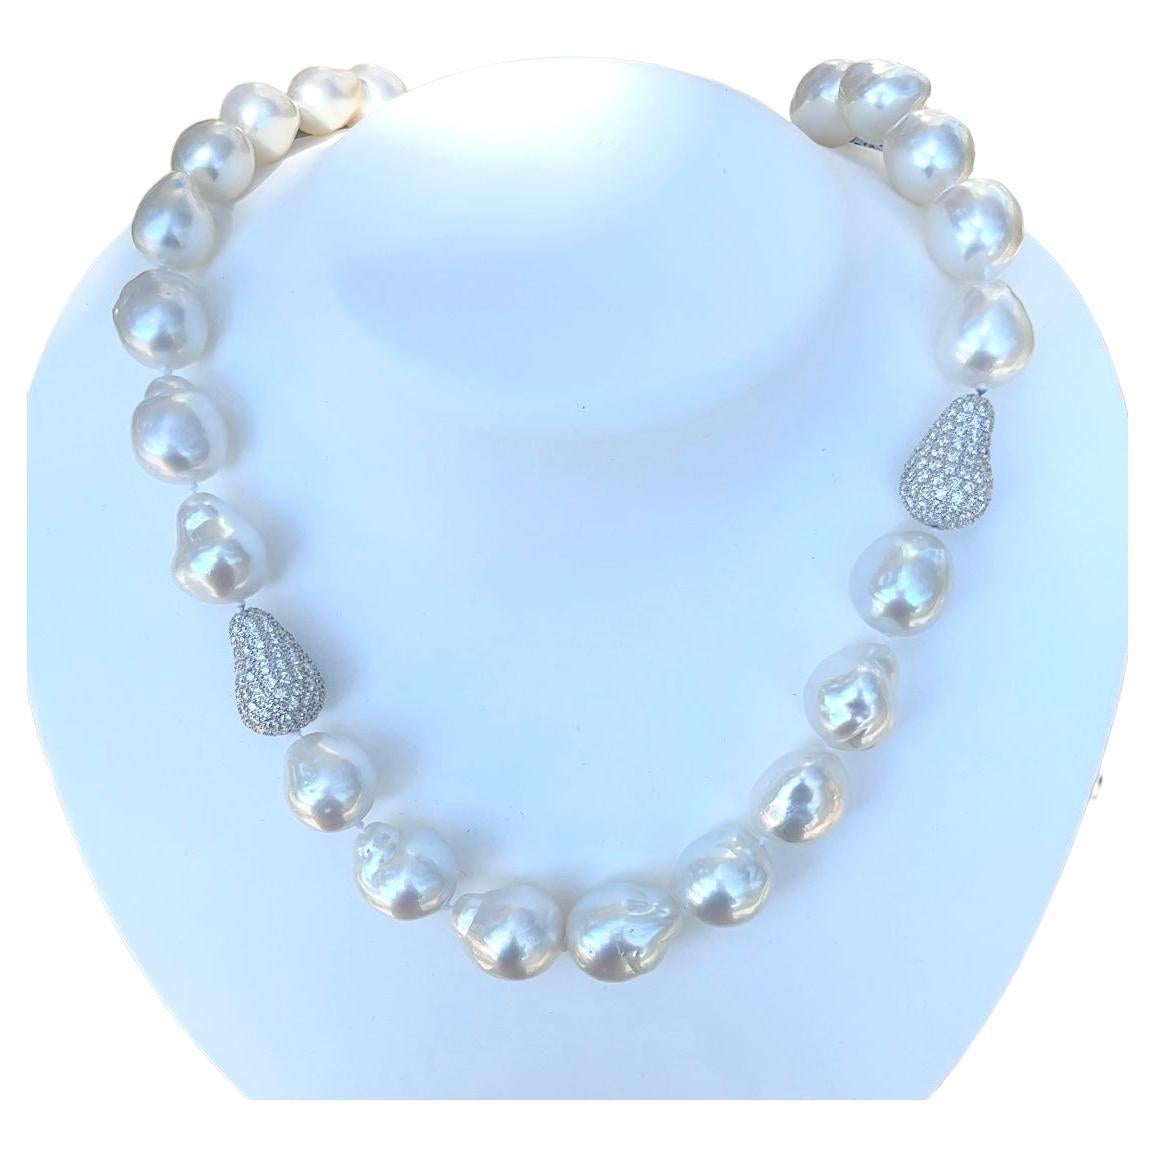 Baroque South Sea Pearls with Pavé Diamonds